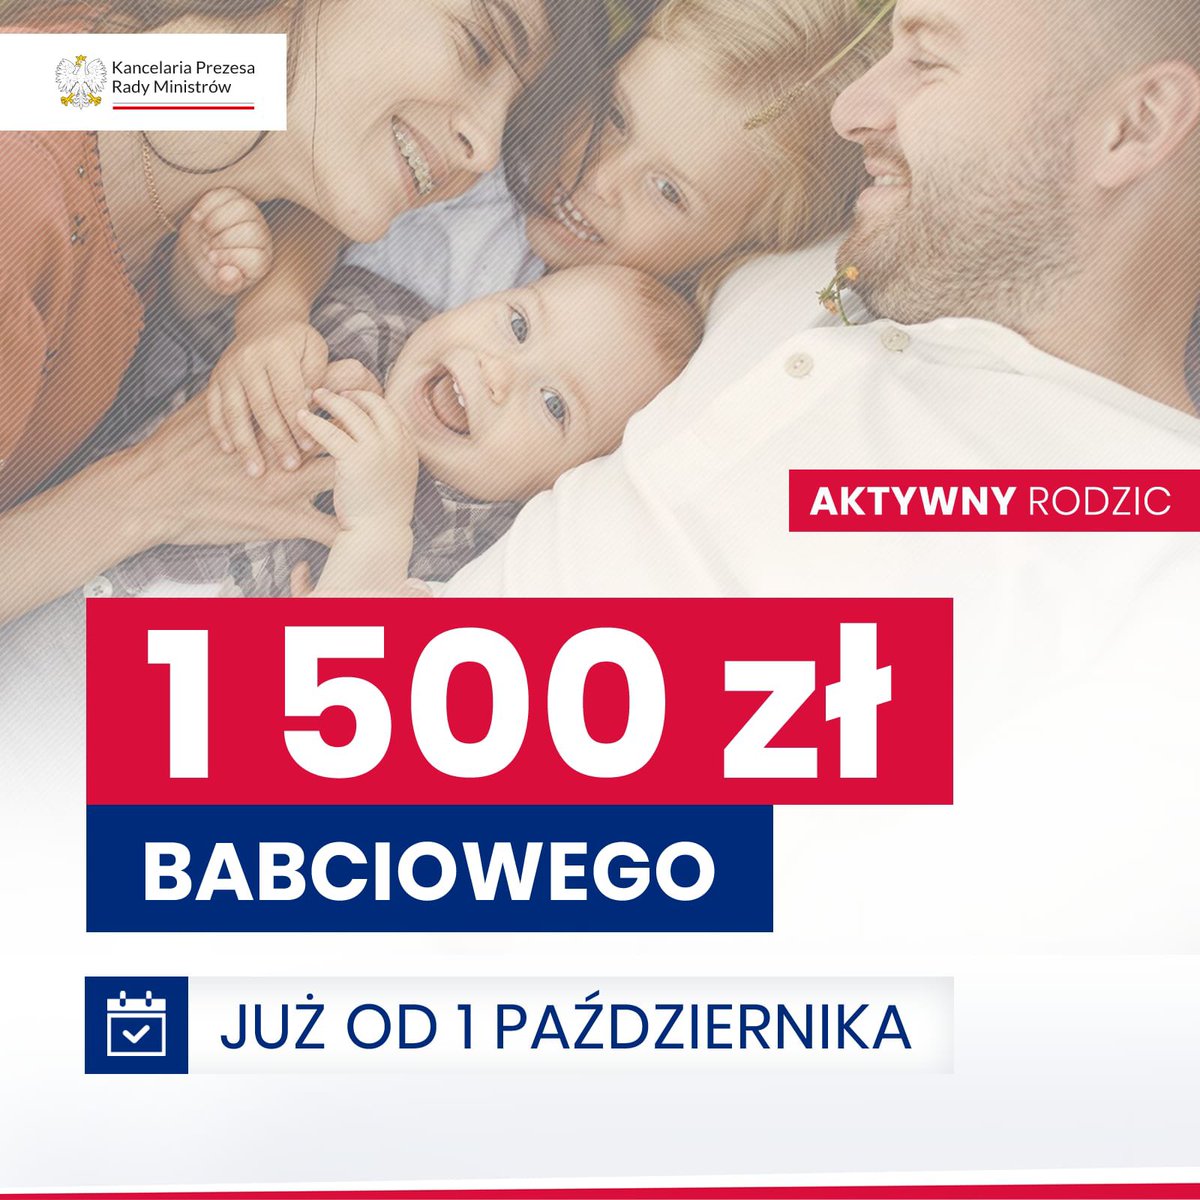 ✔️ Sejm przyjął ustawę o programie Aktywny Rodzic, czyli 1500 zł Babciowego dla rodziców, powracających na rynek pracy po narodzinach dziecka.